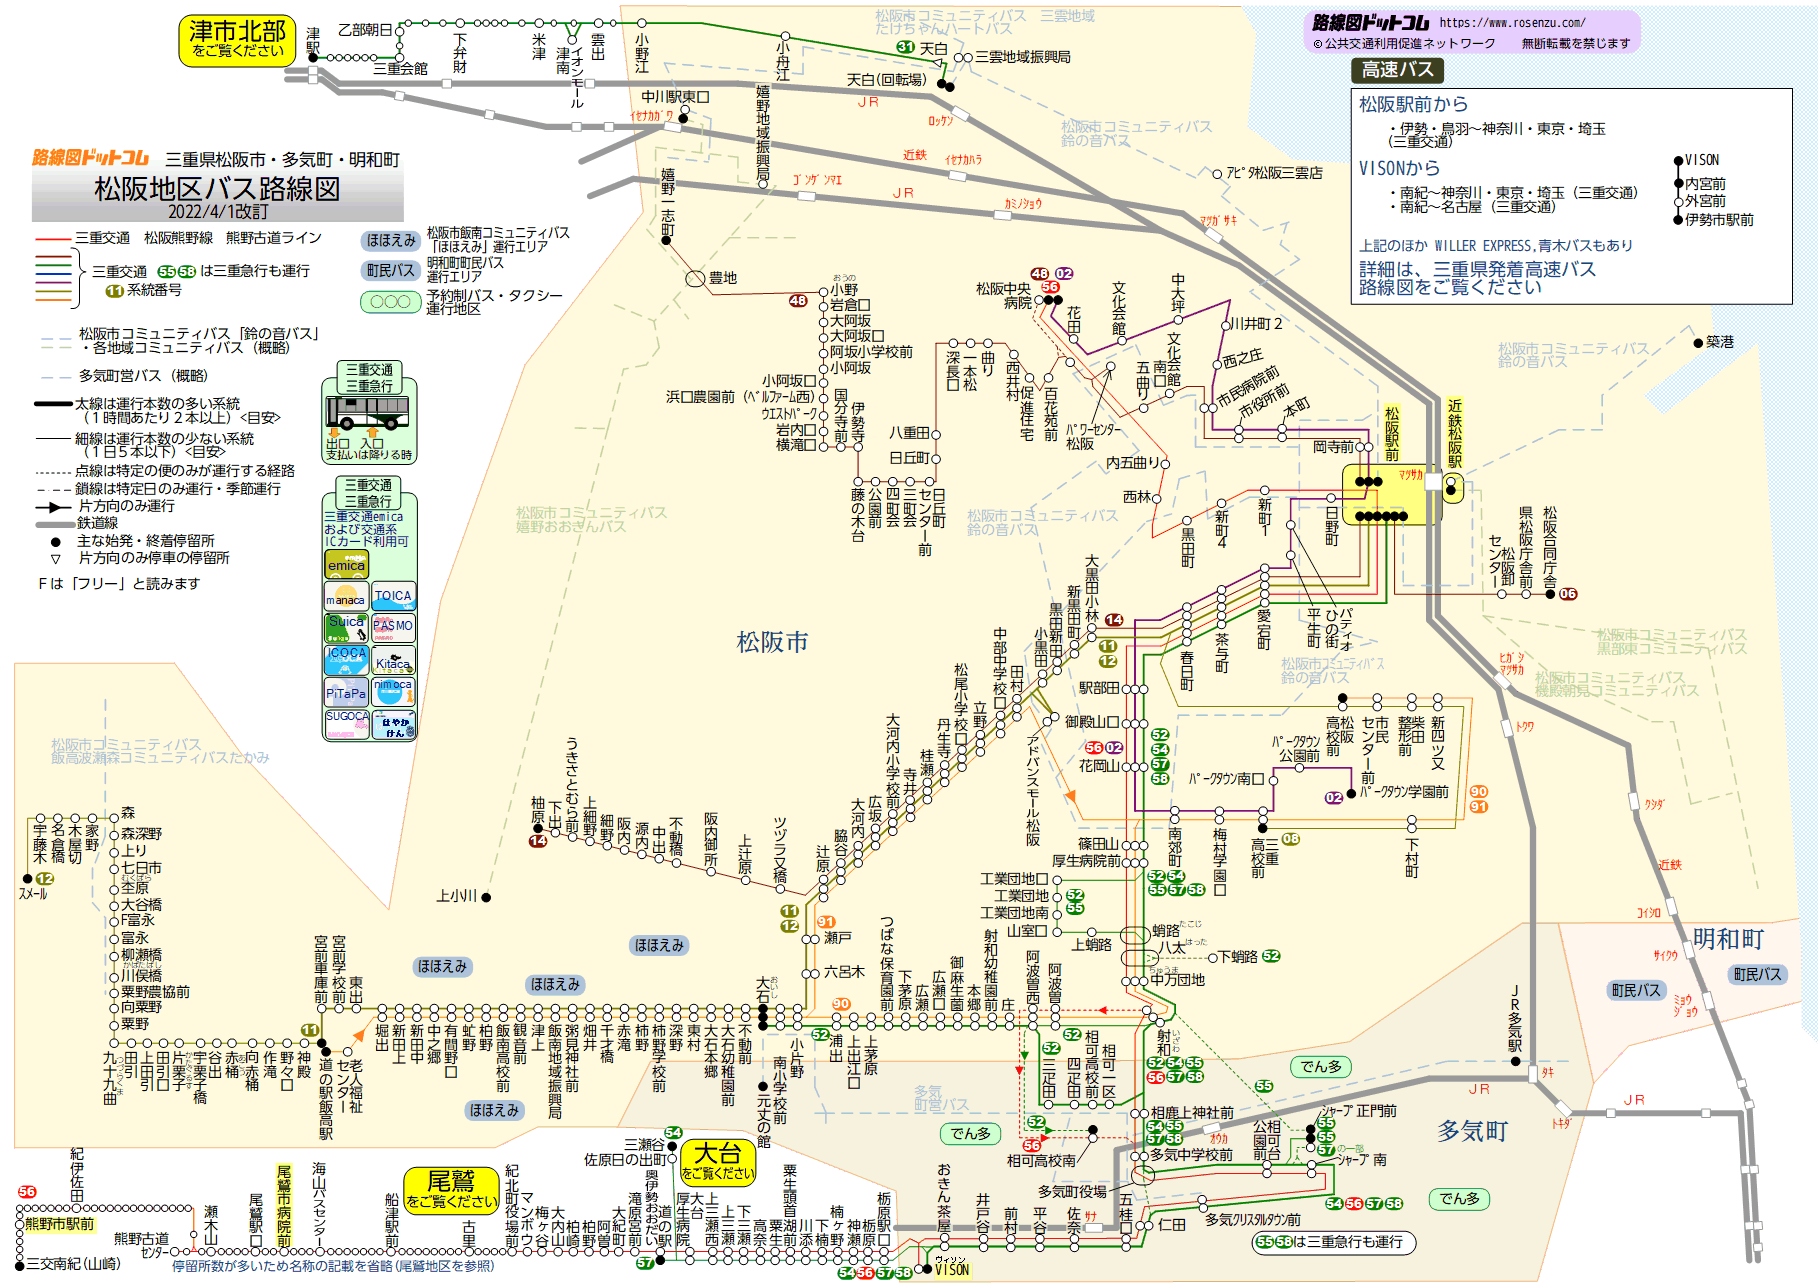 昭和45年 都市地図[高槻市街図/高槻市全図(傷み)]バス路線.バス停名 